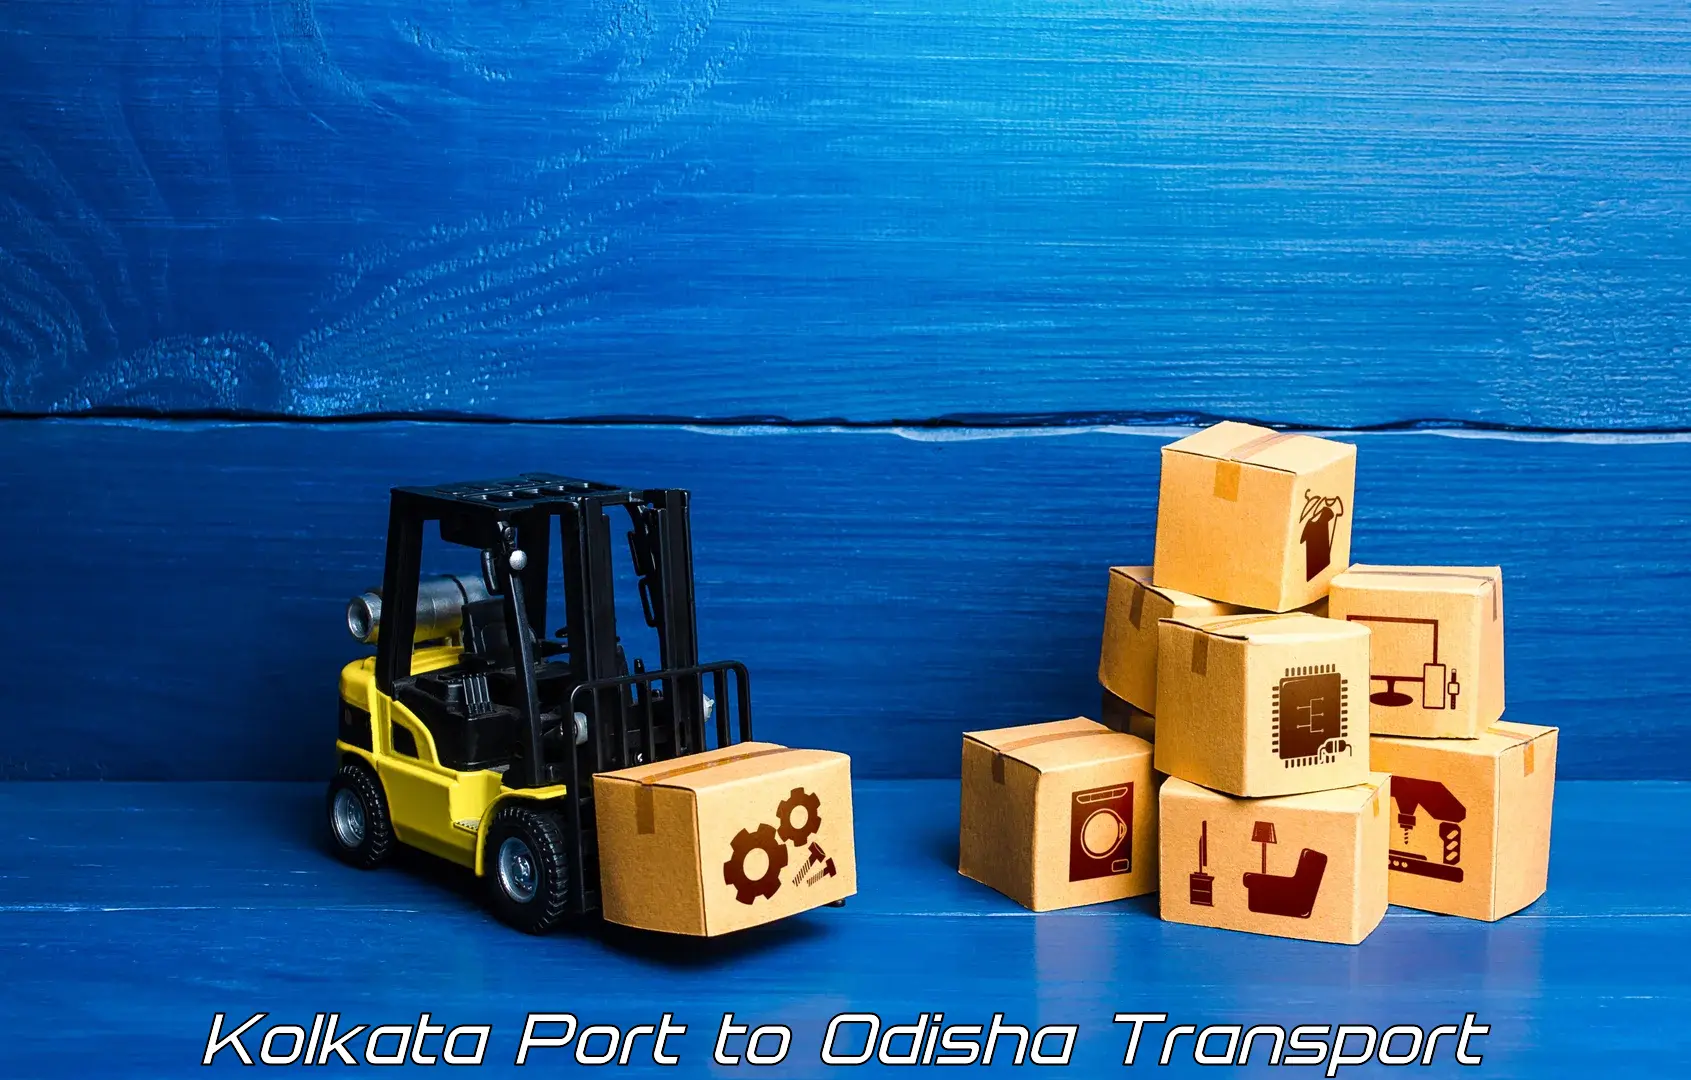 Container transportation services Kolkata Port to Tikiri